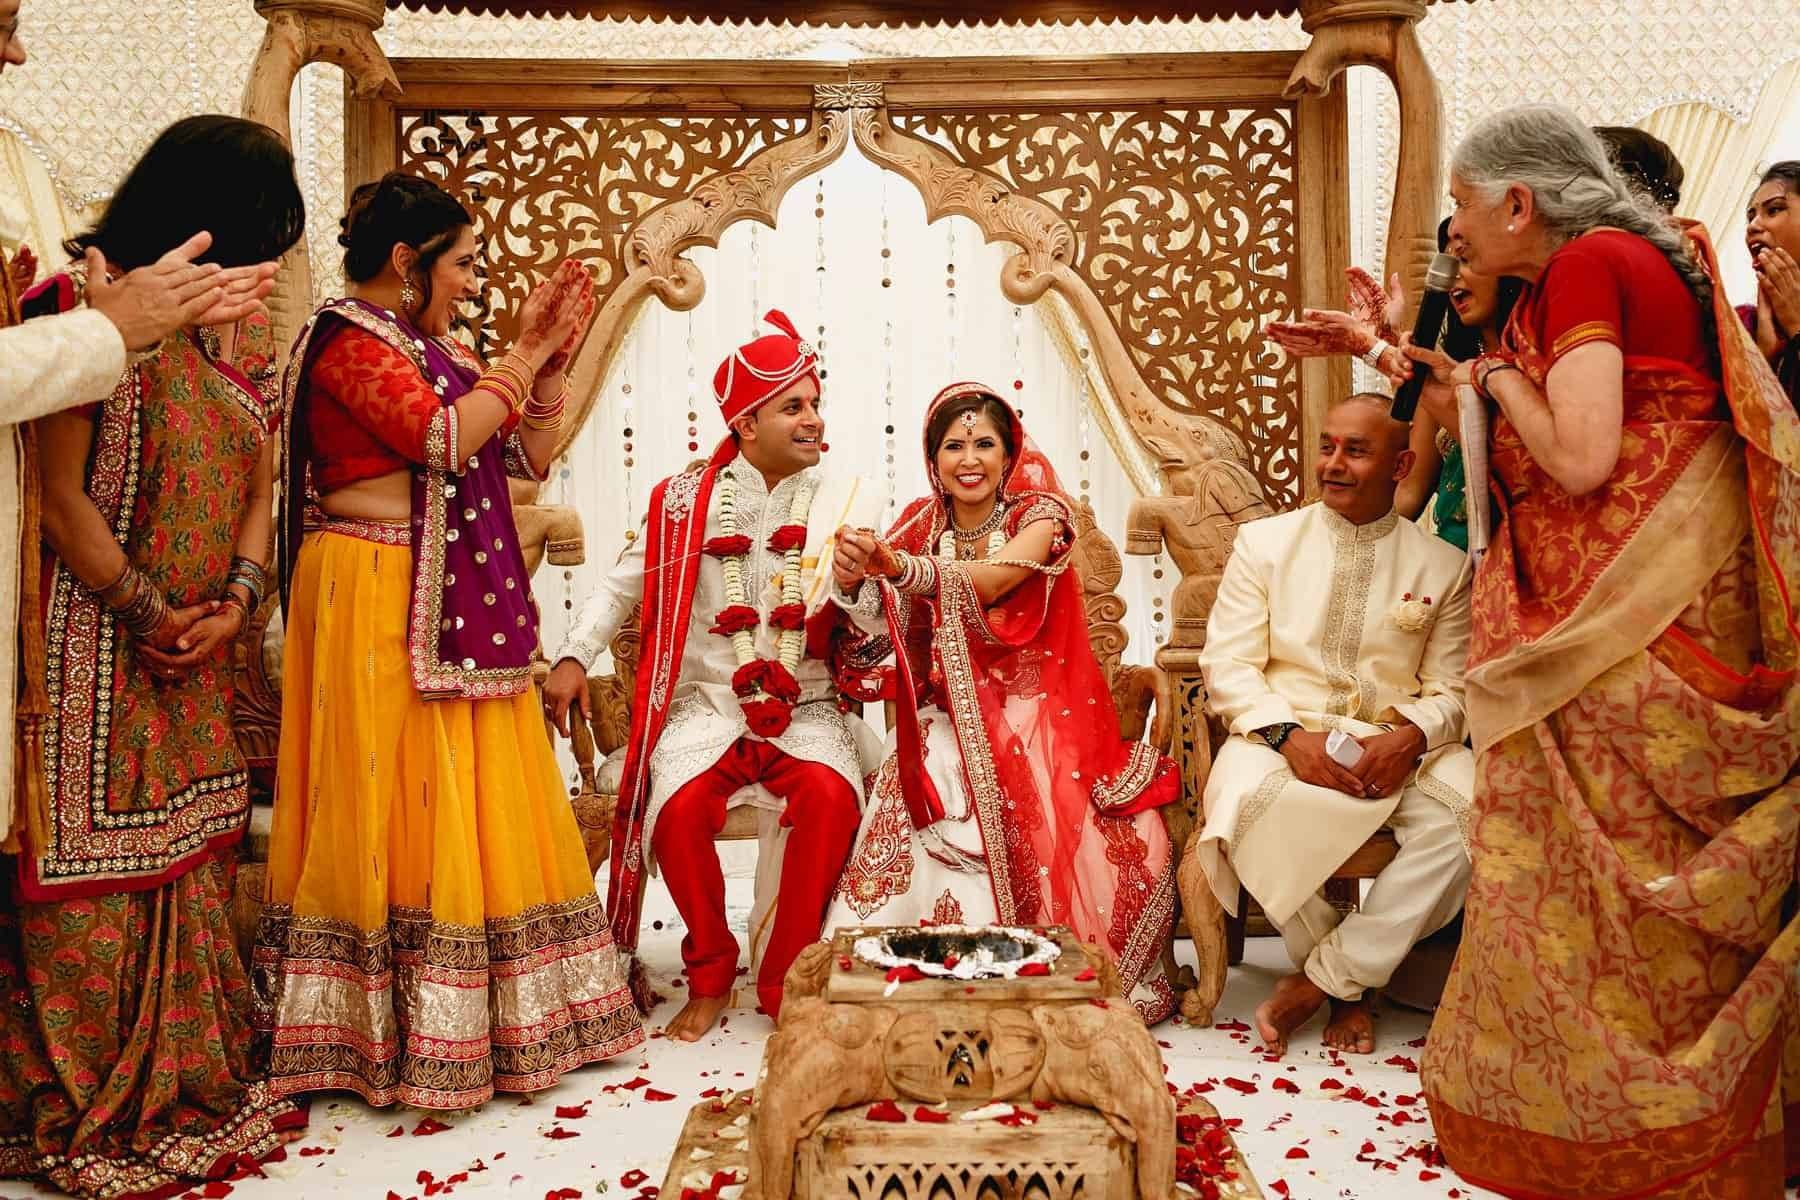 Интересные факты об индийской свадьбе
интересные факты об индийской свадьбе